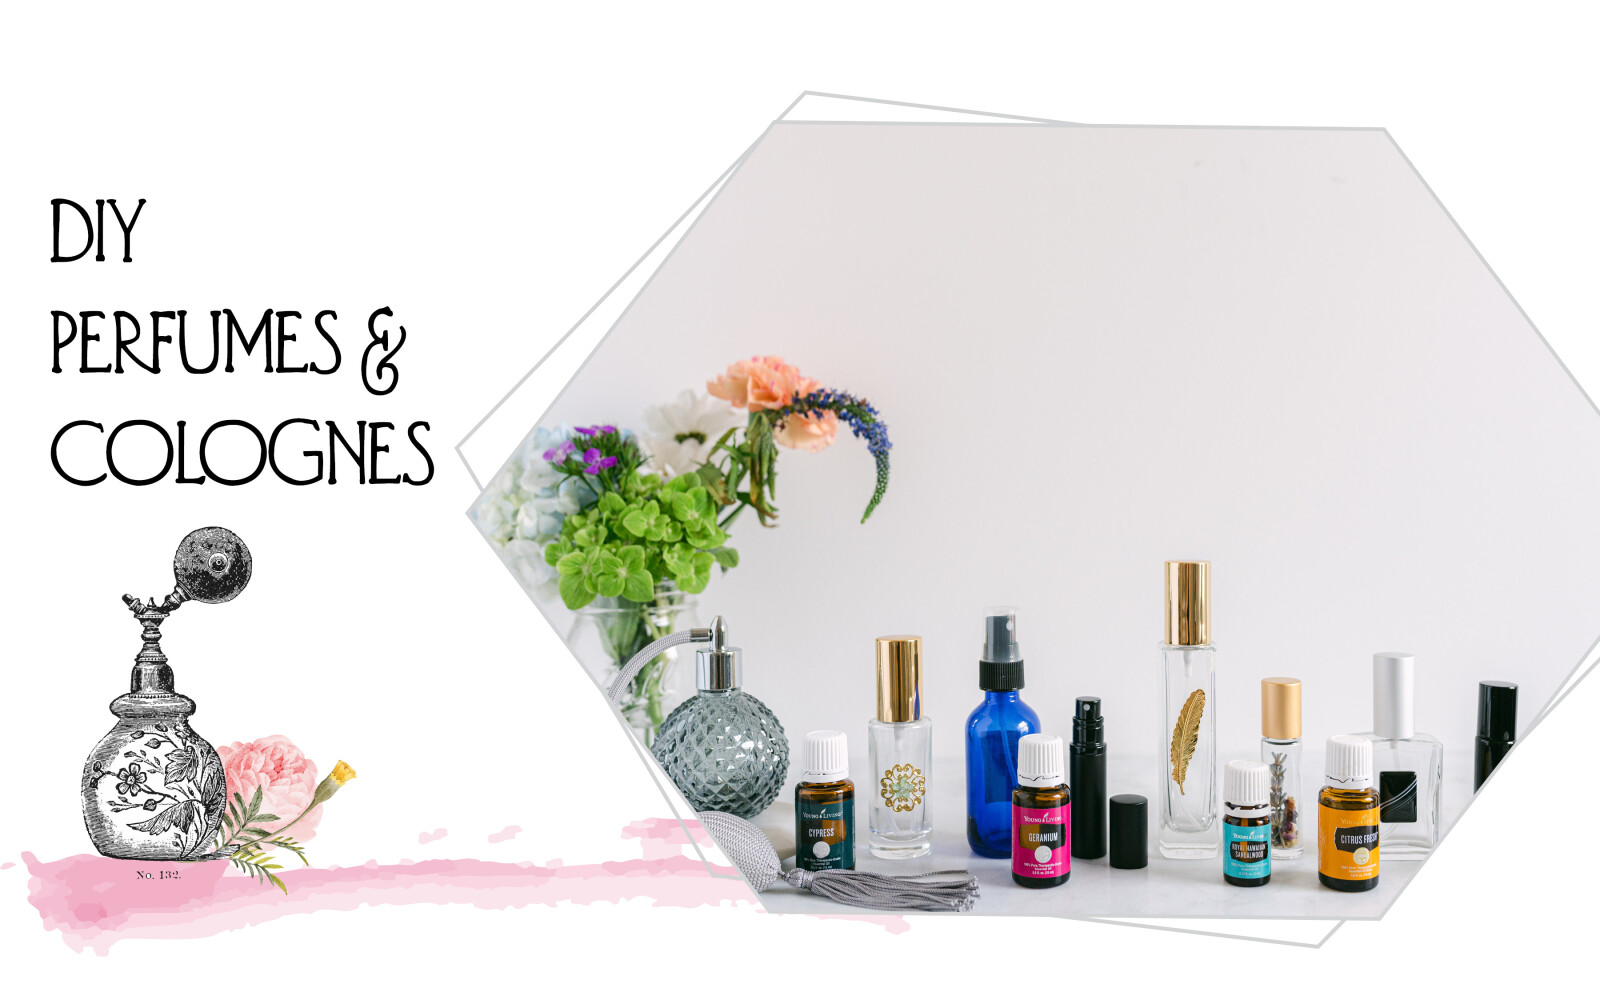 DIY Perfumes & Colognes